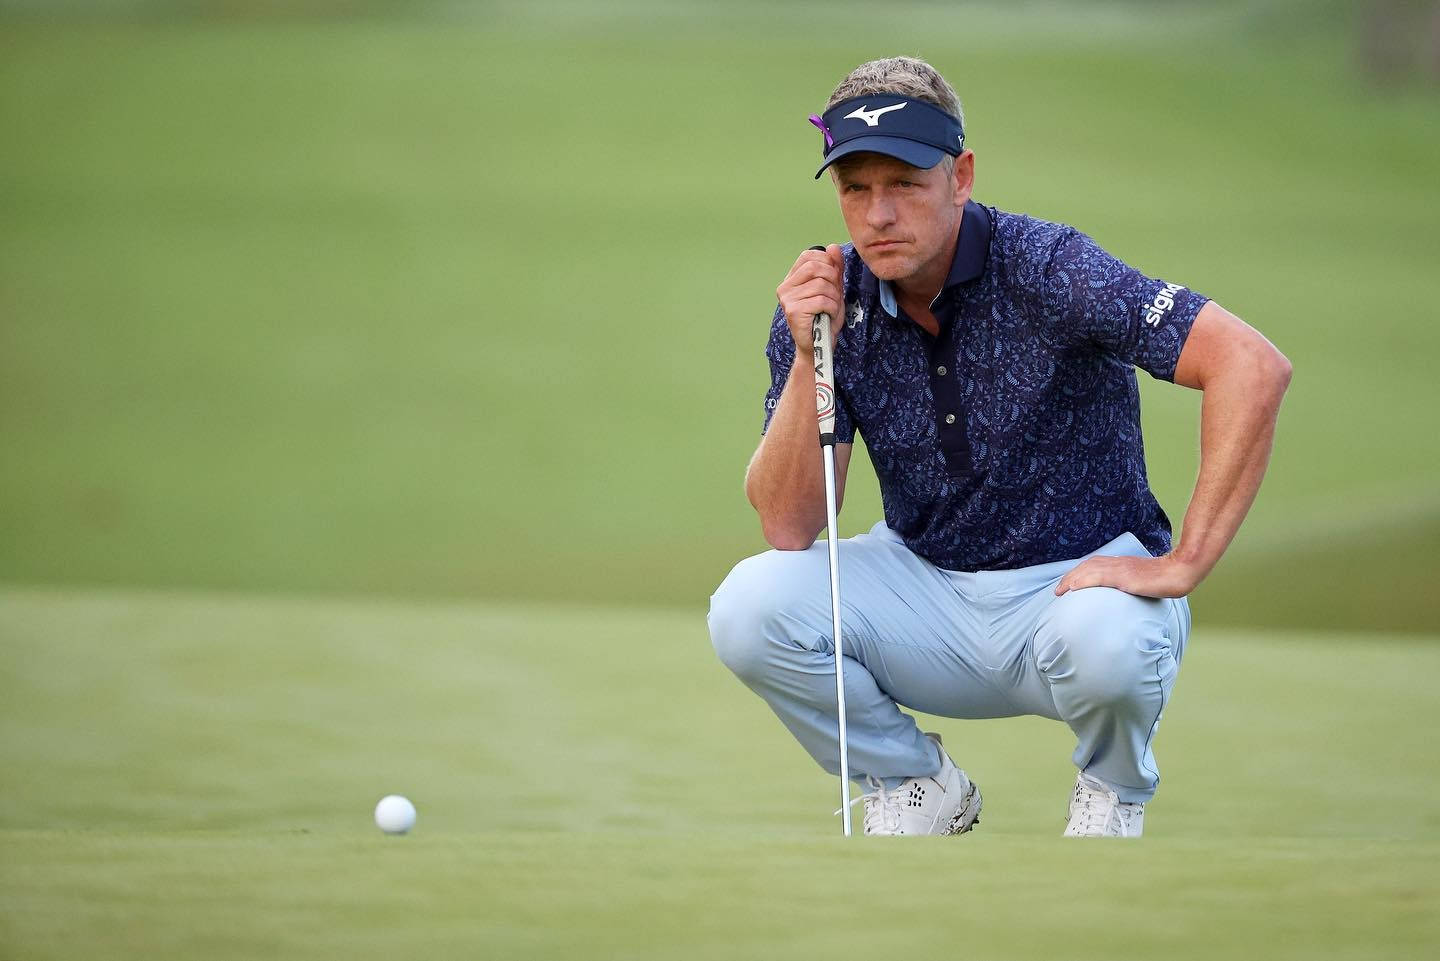 Luke Donald Intense Focus on Golf Ball Wallpaper